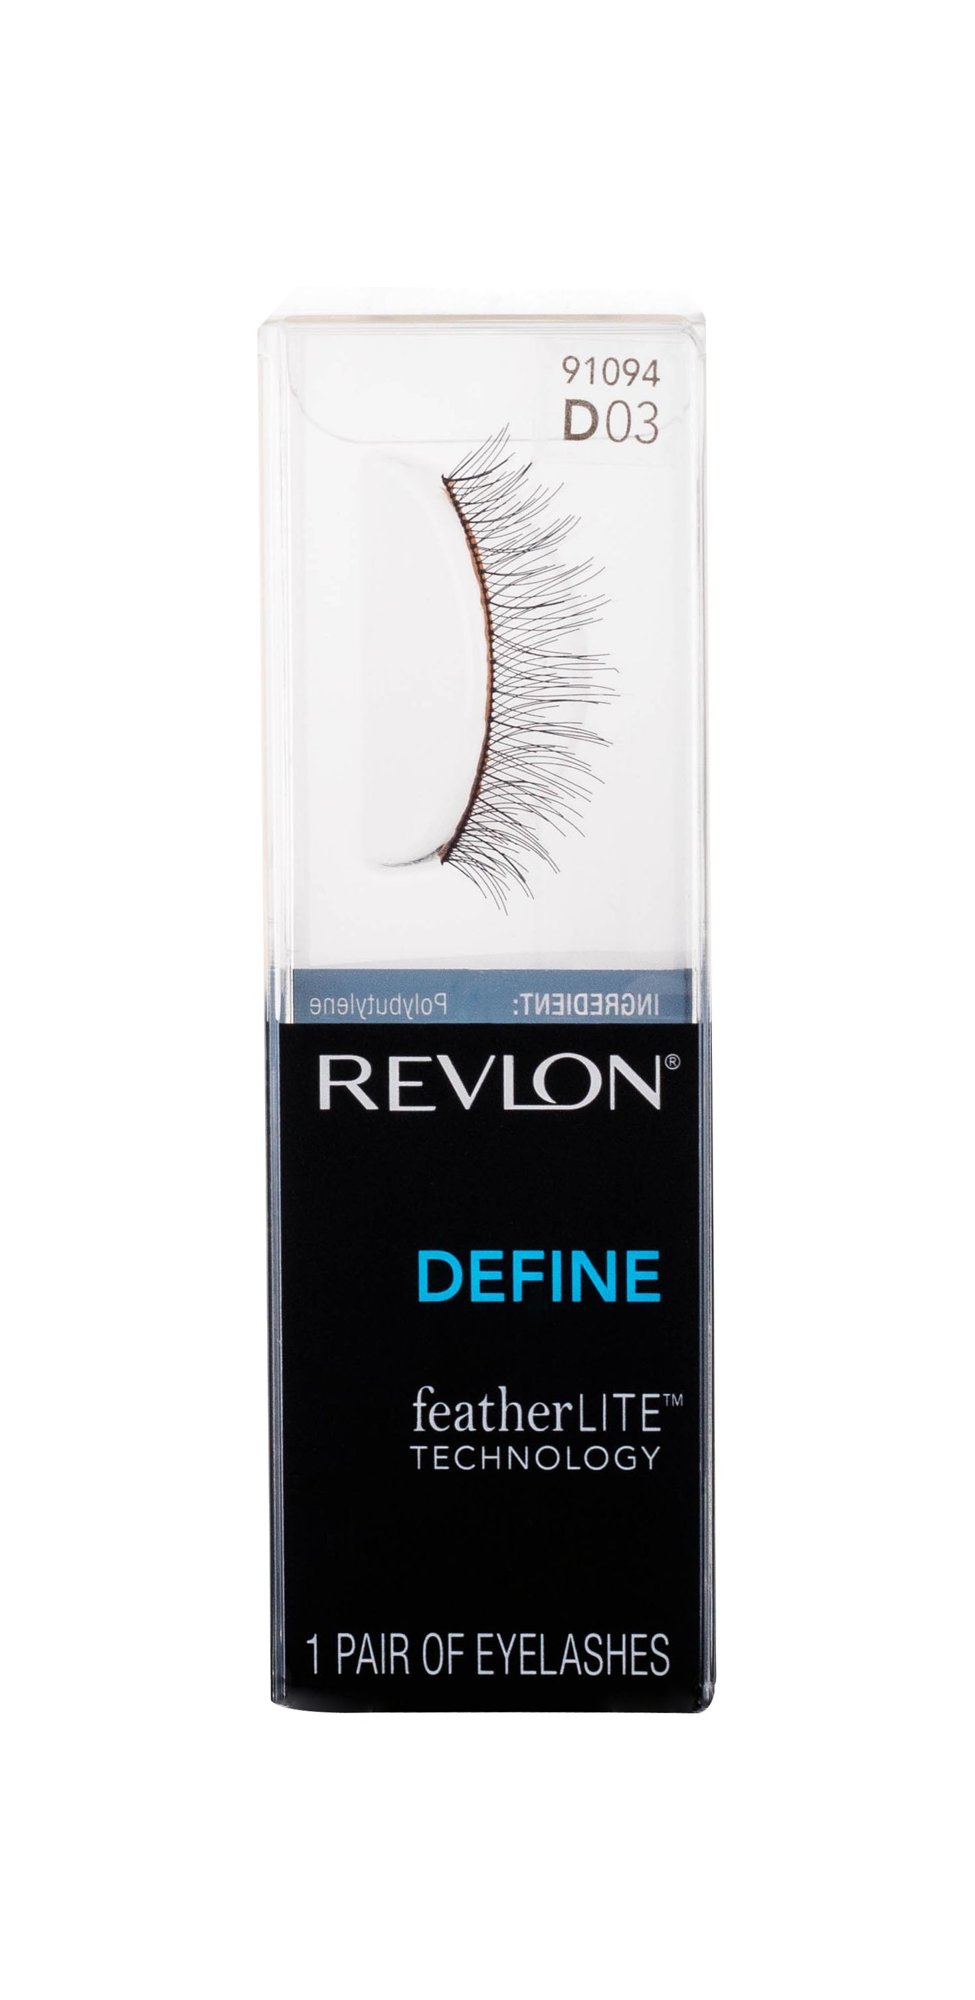 Revlon Define featherLITE Technology dirbtinės blakstienos